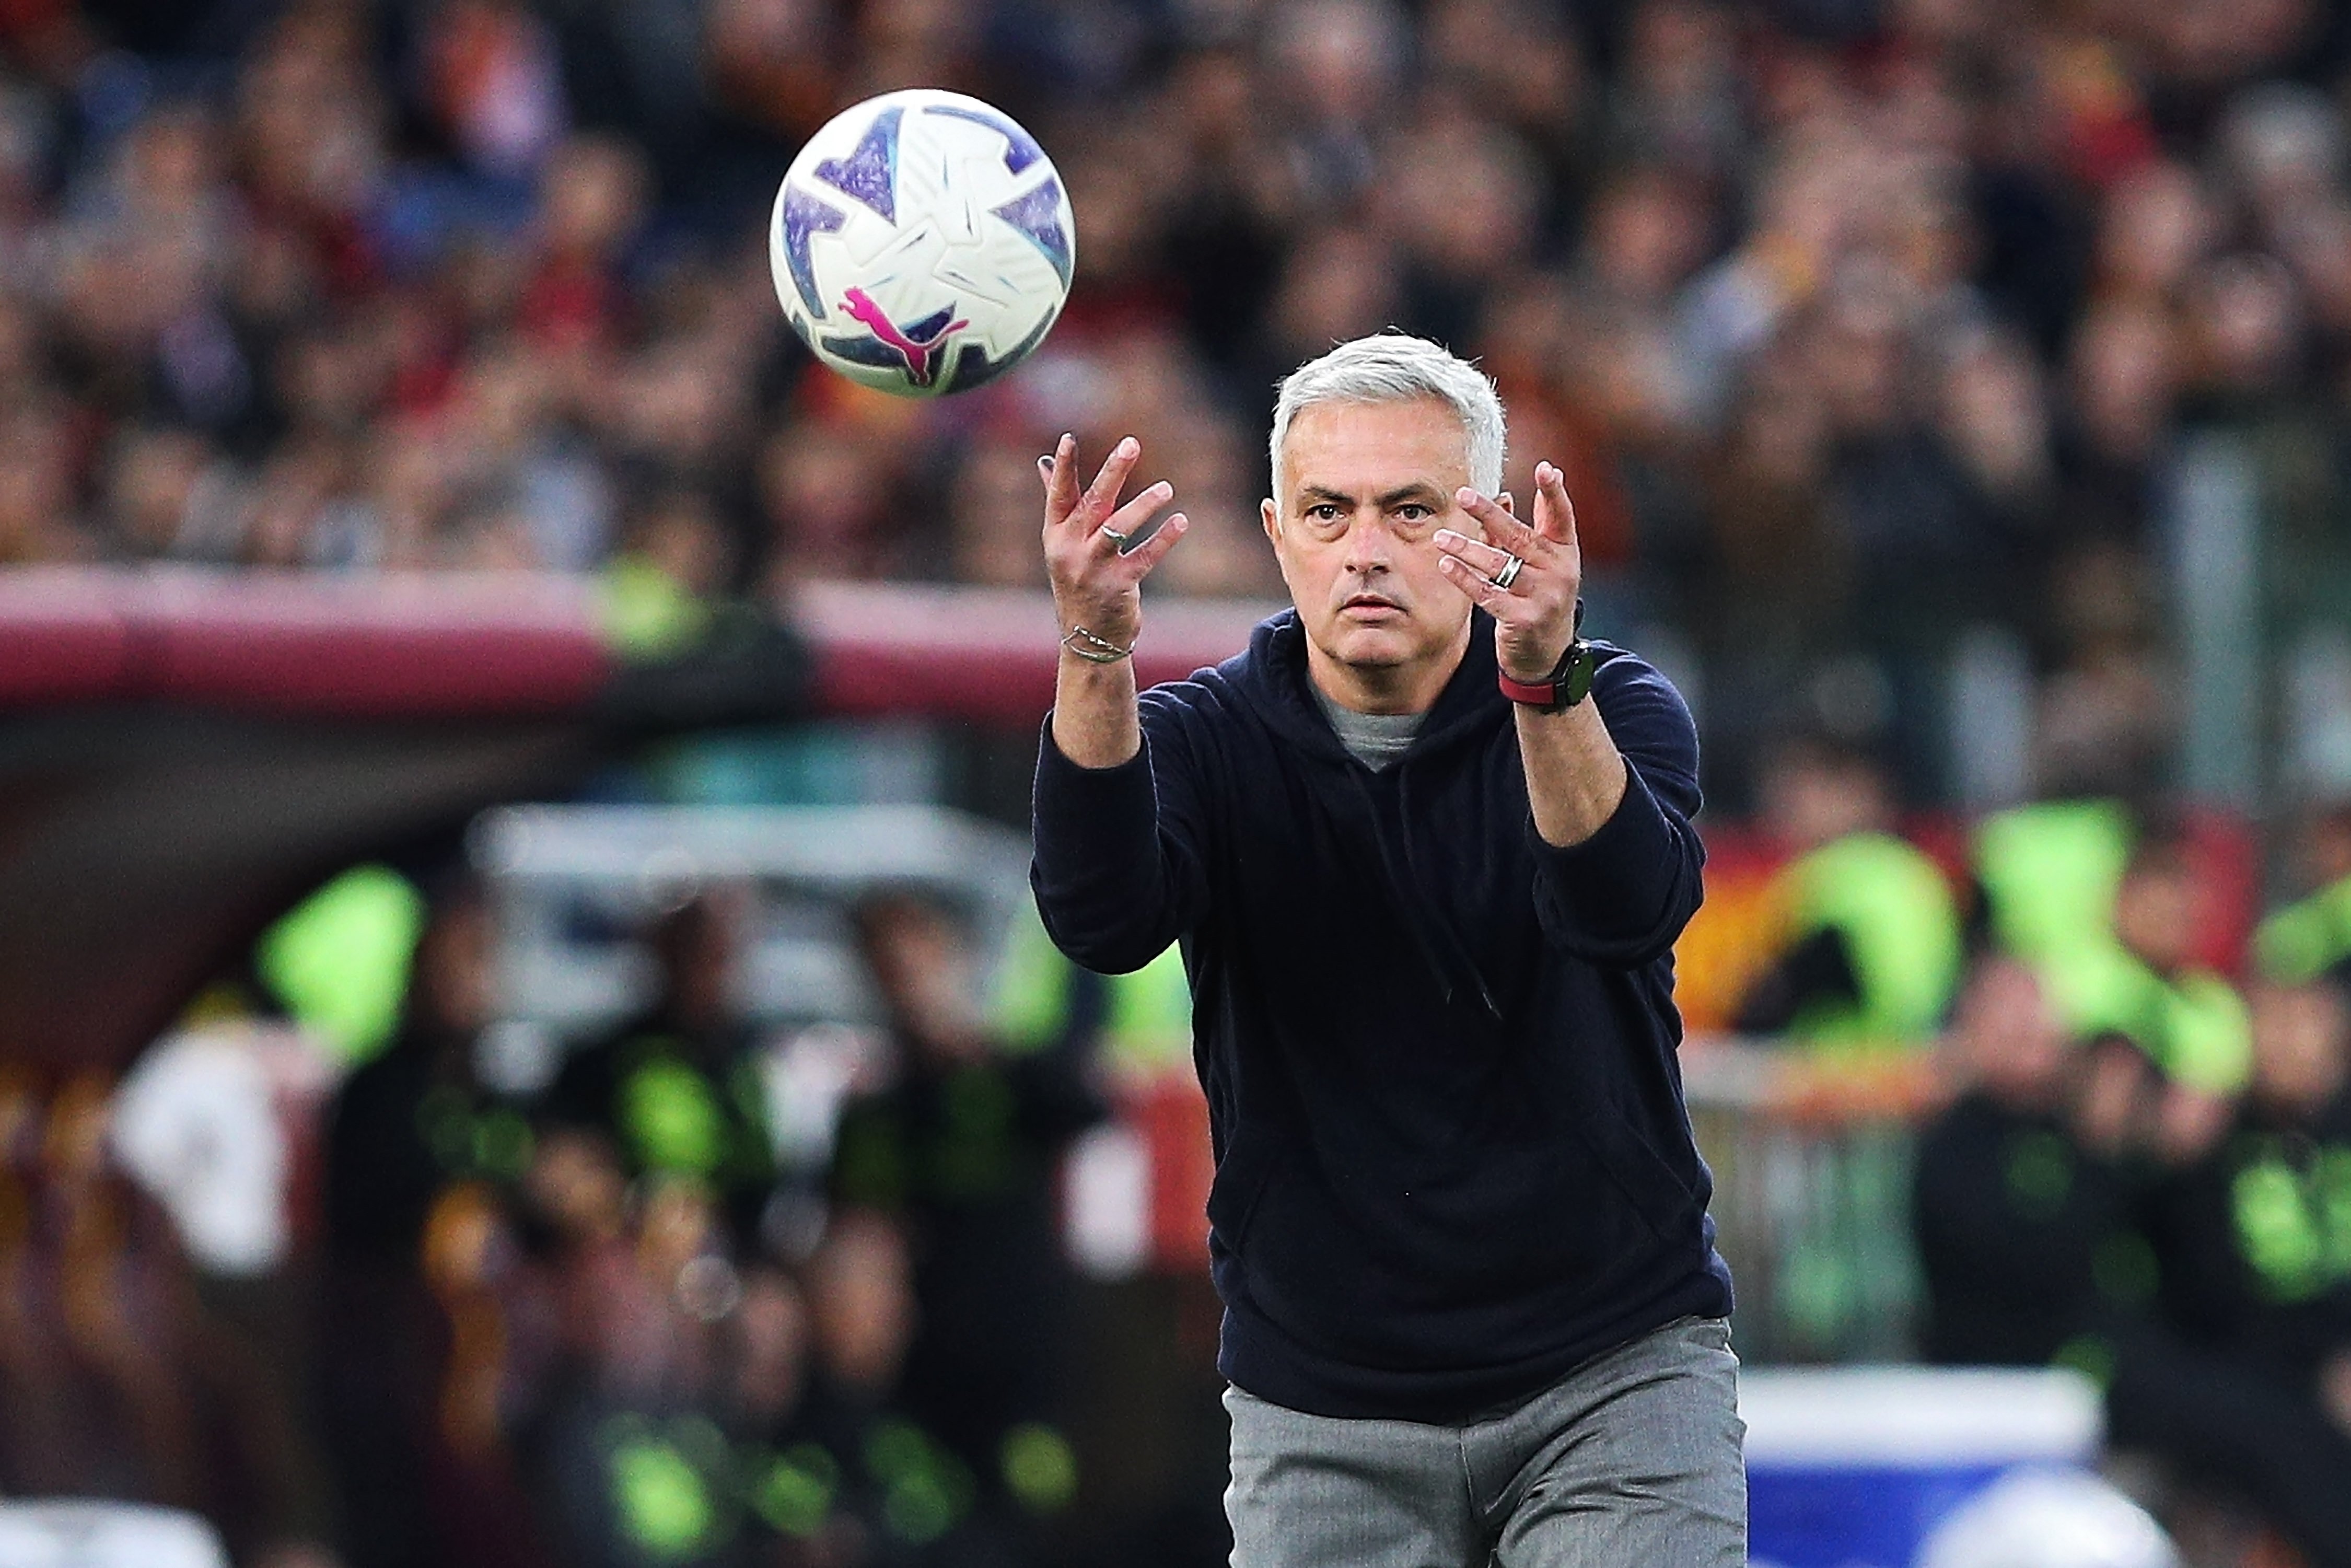 La Roma hace negocios con el PSG, sí a Mourinho, pero no a Florentino Pérez, se va